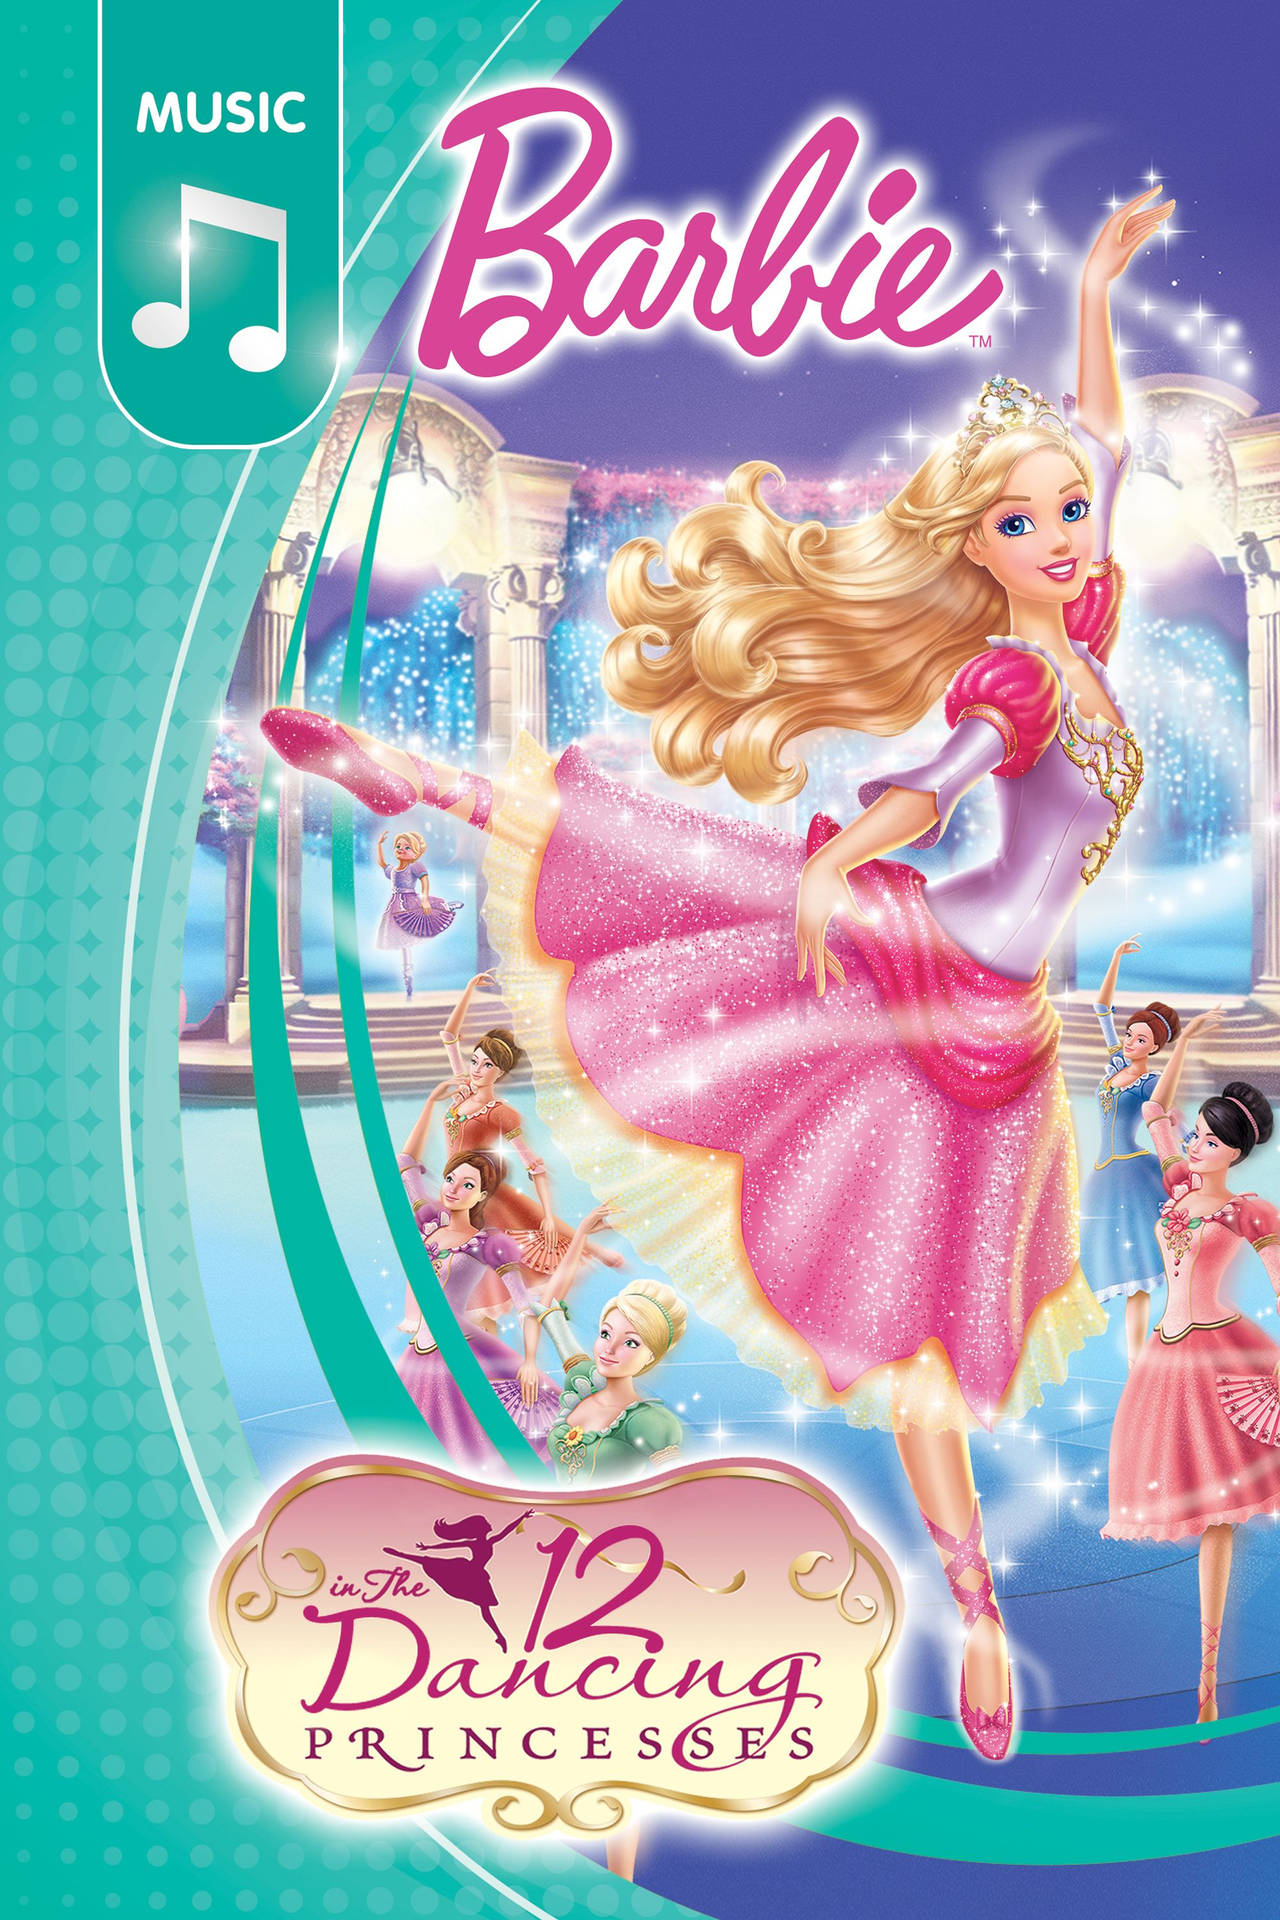 Barbie Princess Dancing Princesses Music Cover Wallpaper